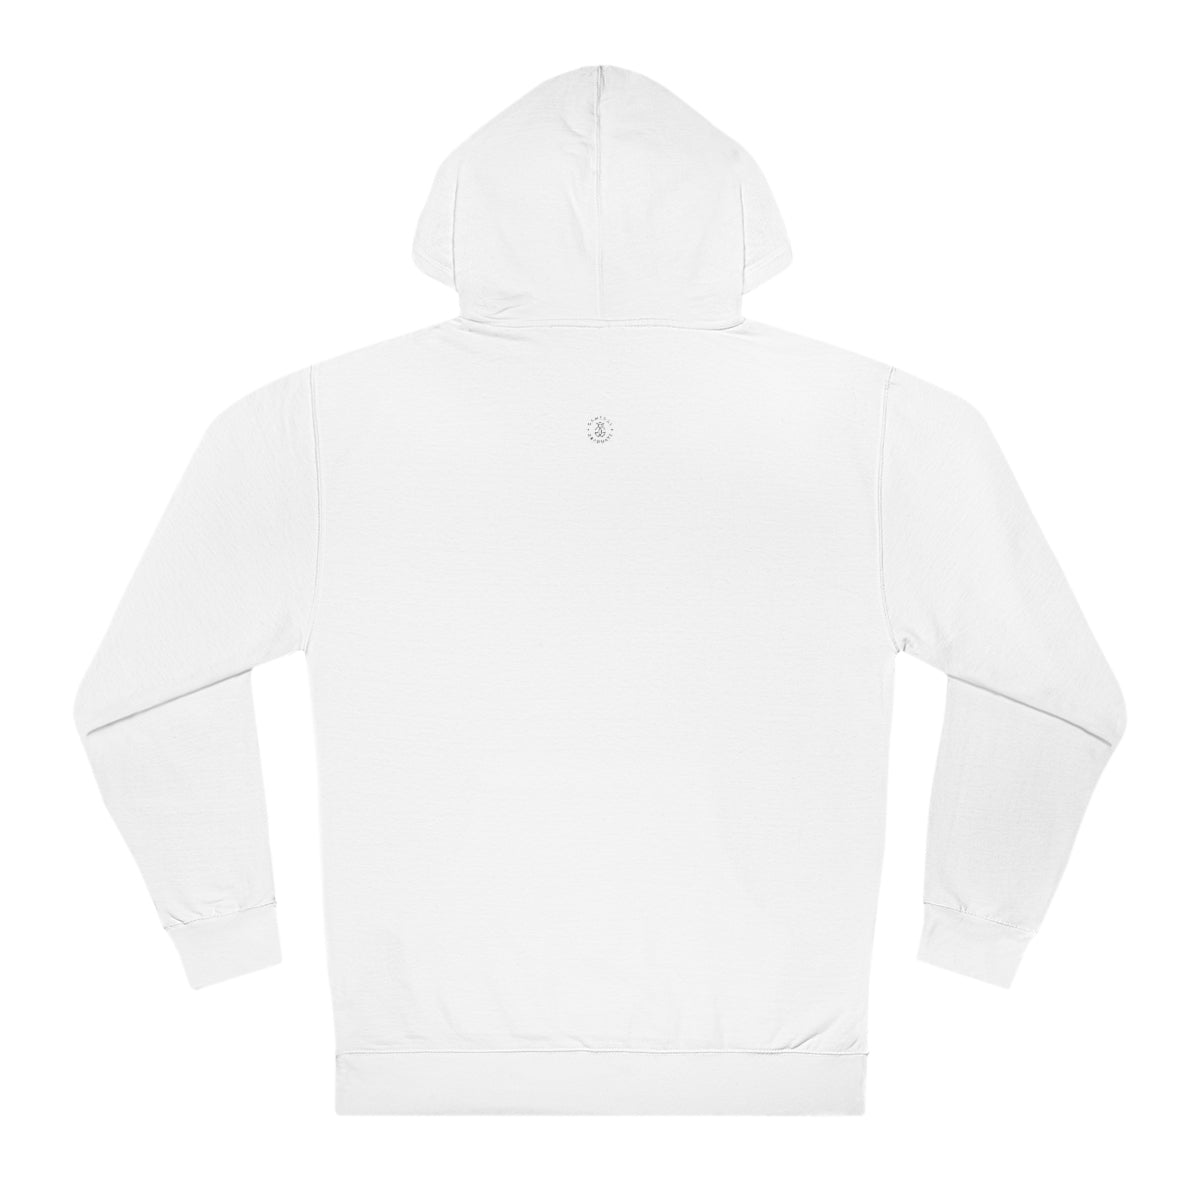 Smiley Pullman Hooded Sweatshirt - GG - ITC